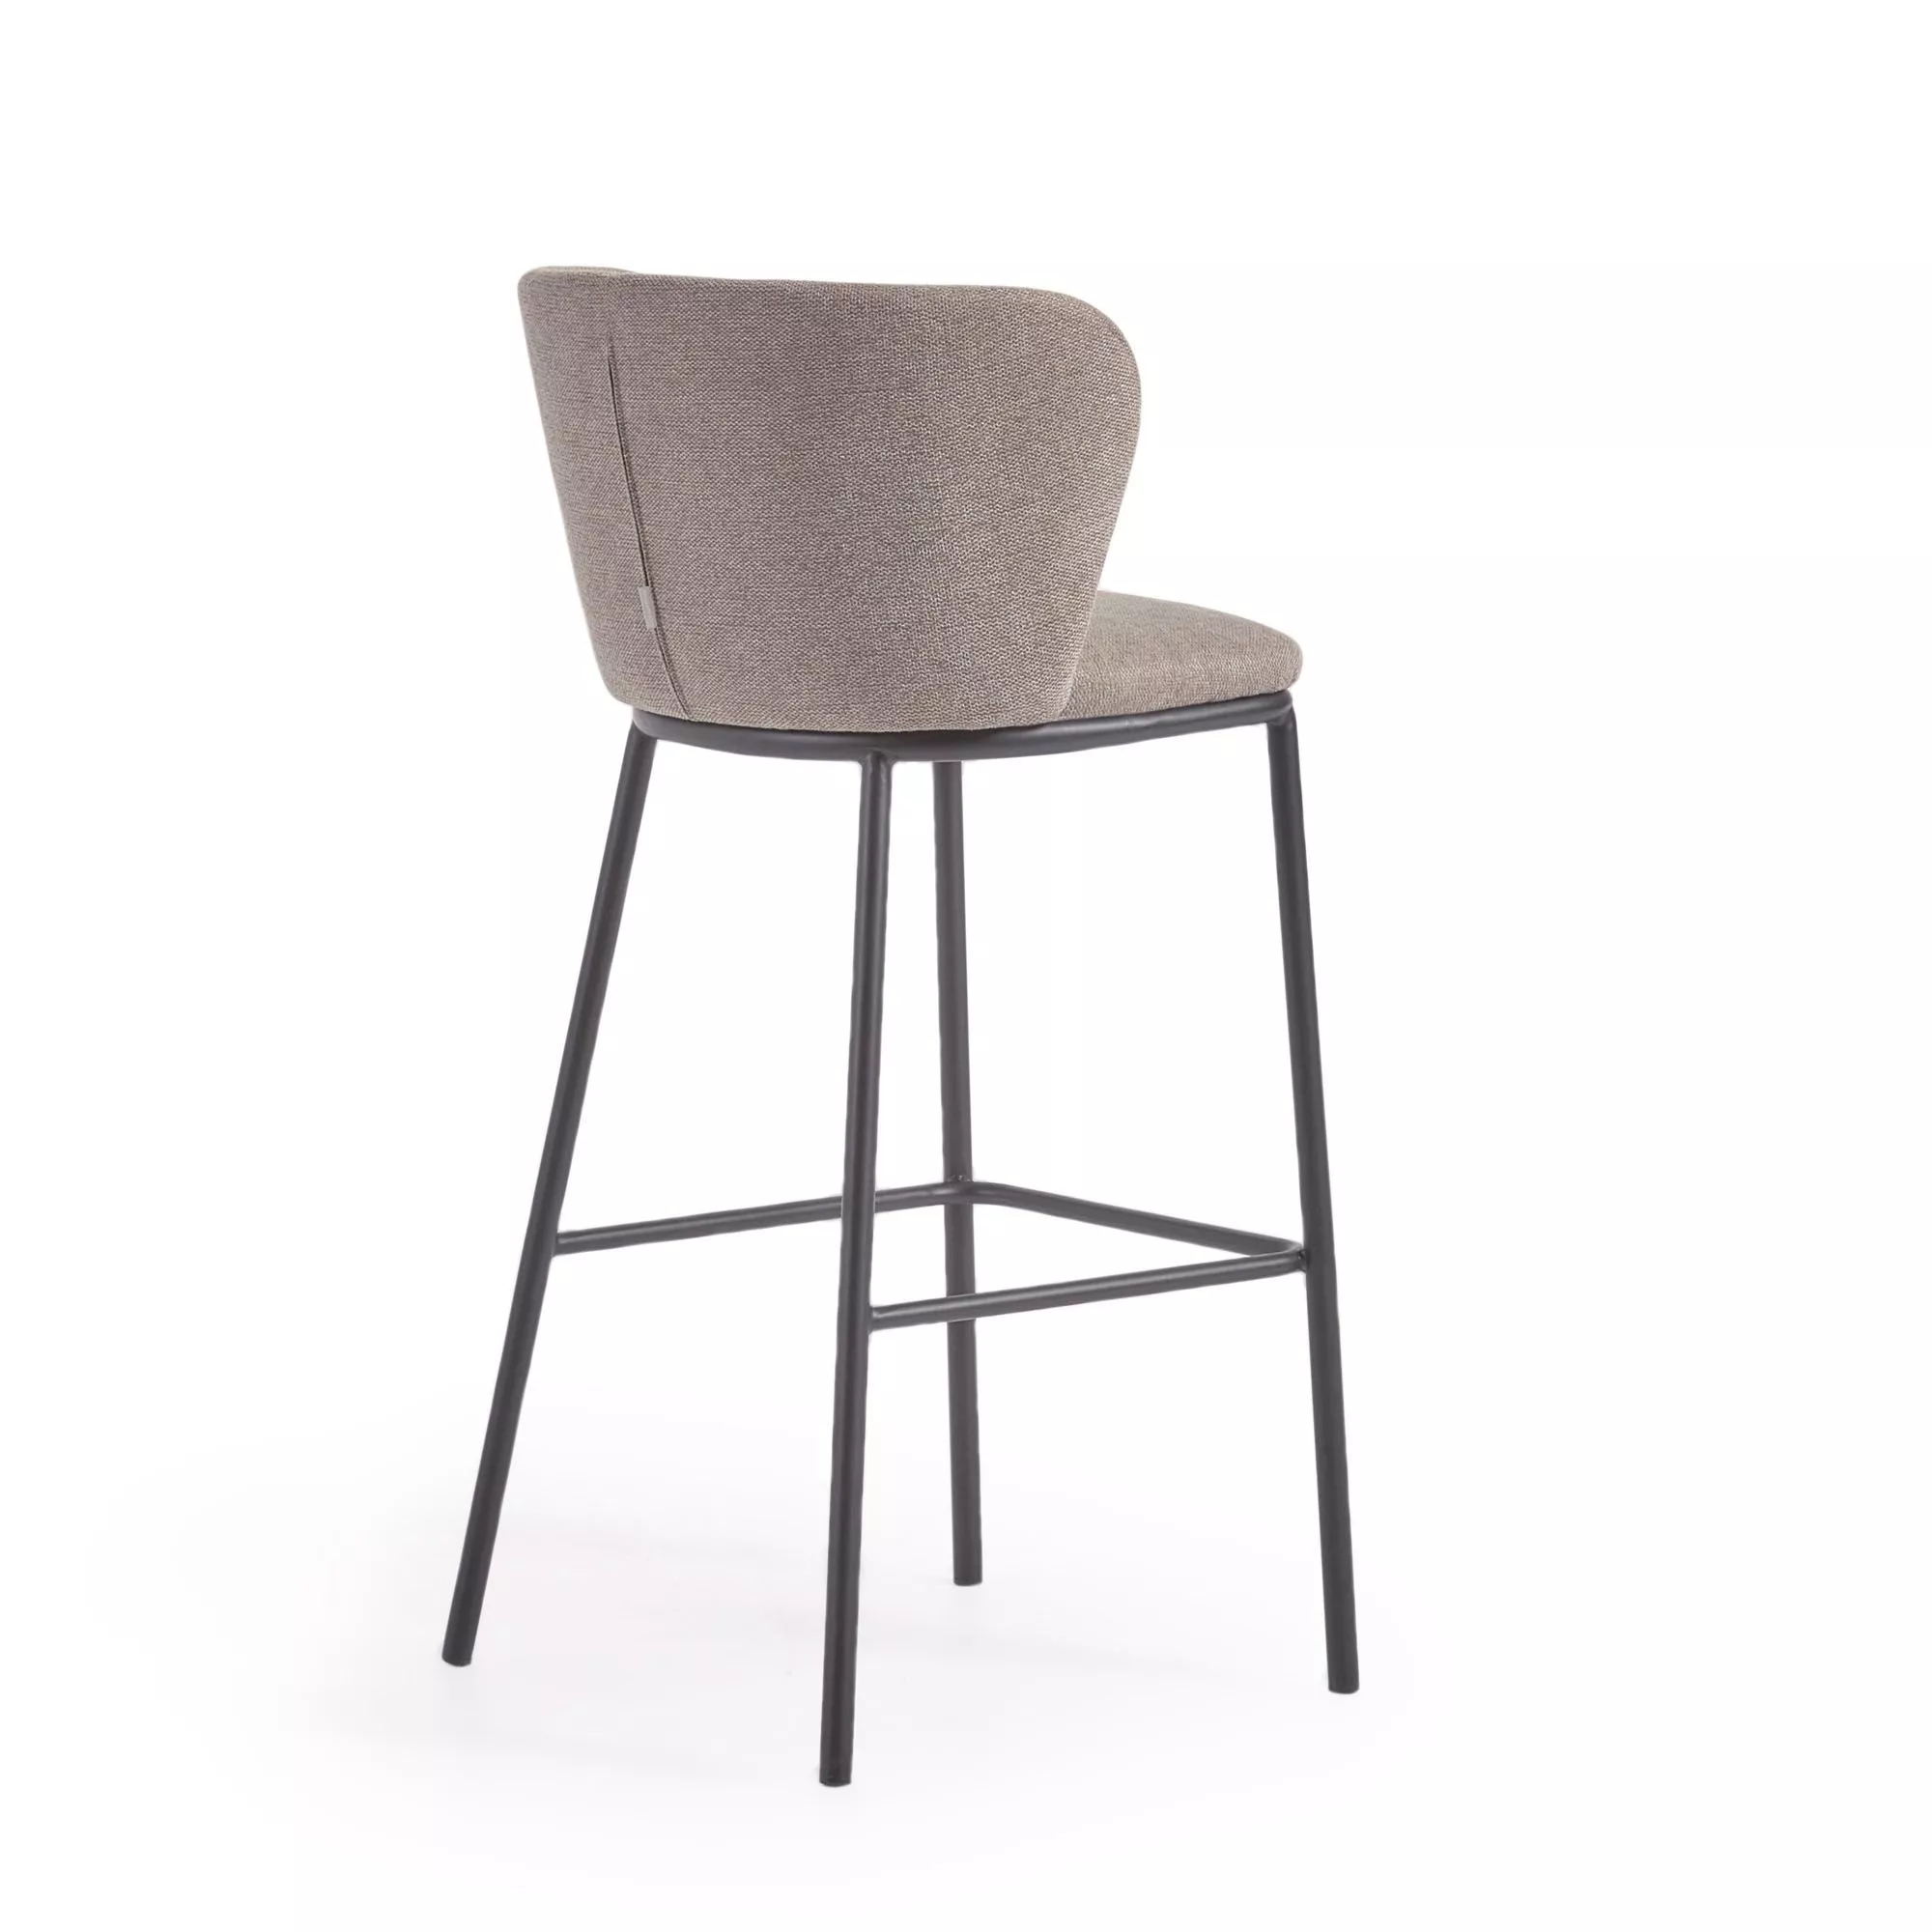 Барный стул La Forma Ciselia из светло-коричневой синели и черной стали 75 см